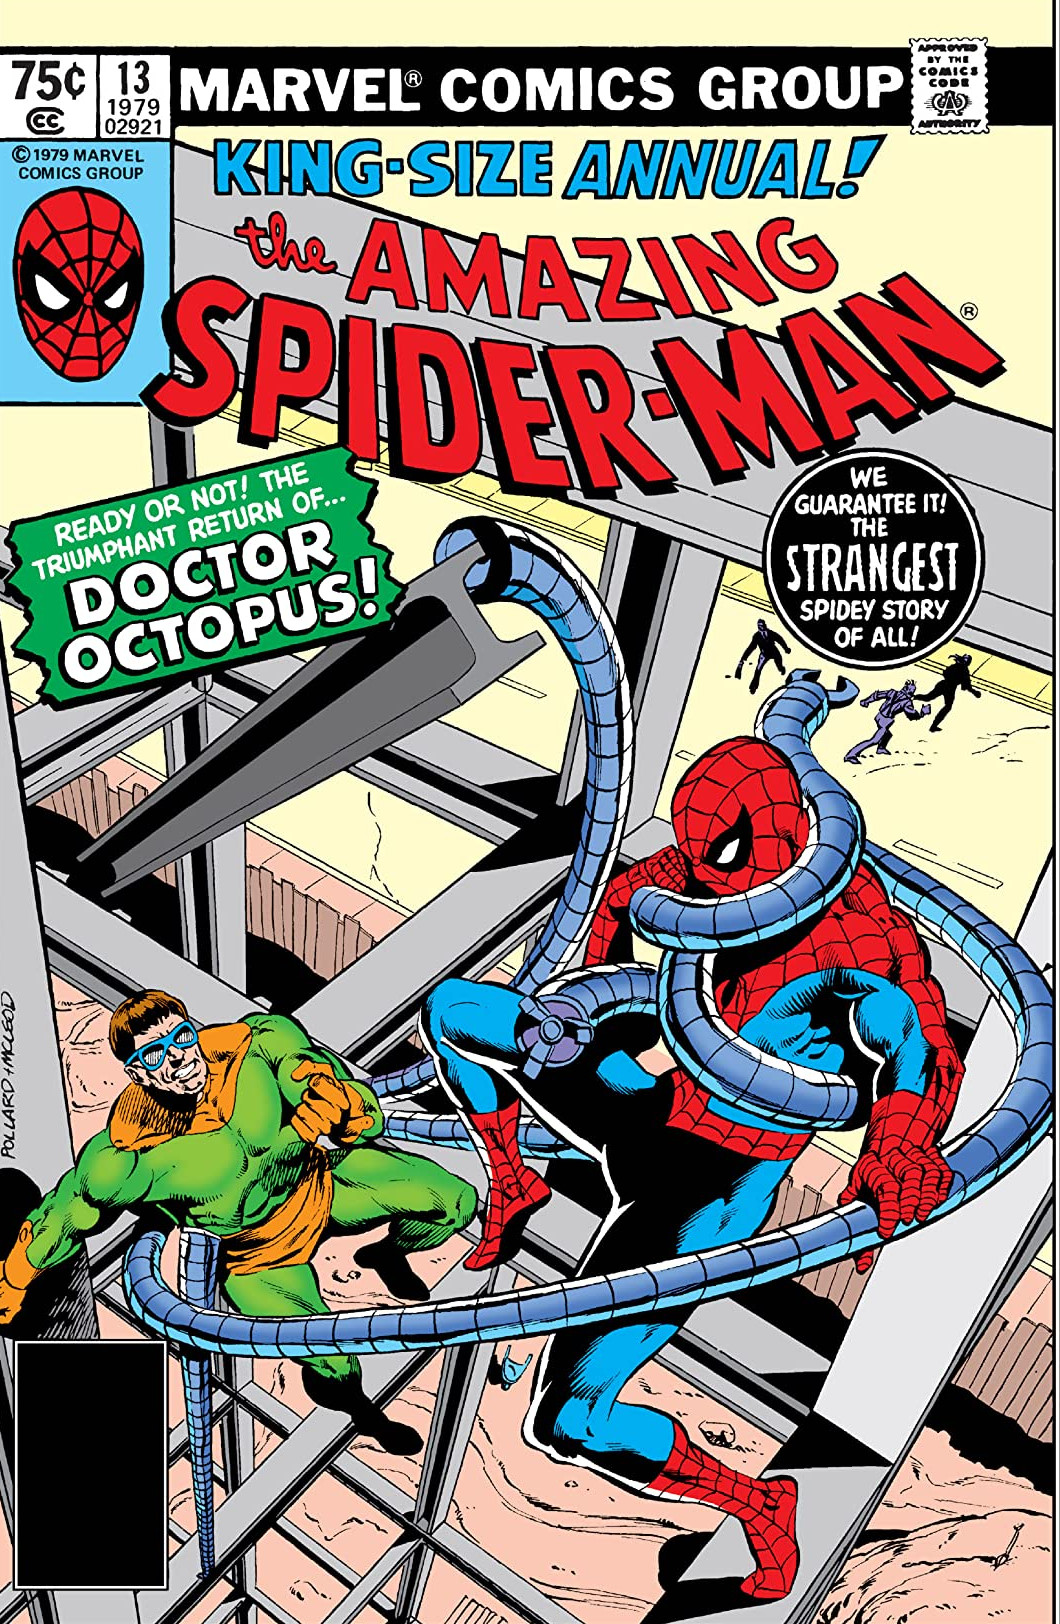 Desobediencia erección enero Amazing Spider-Man Annual Vol 1 13 | Marvel Database | Fandom